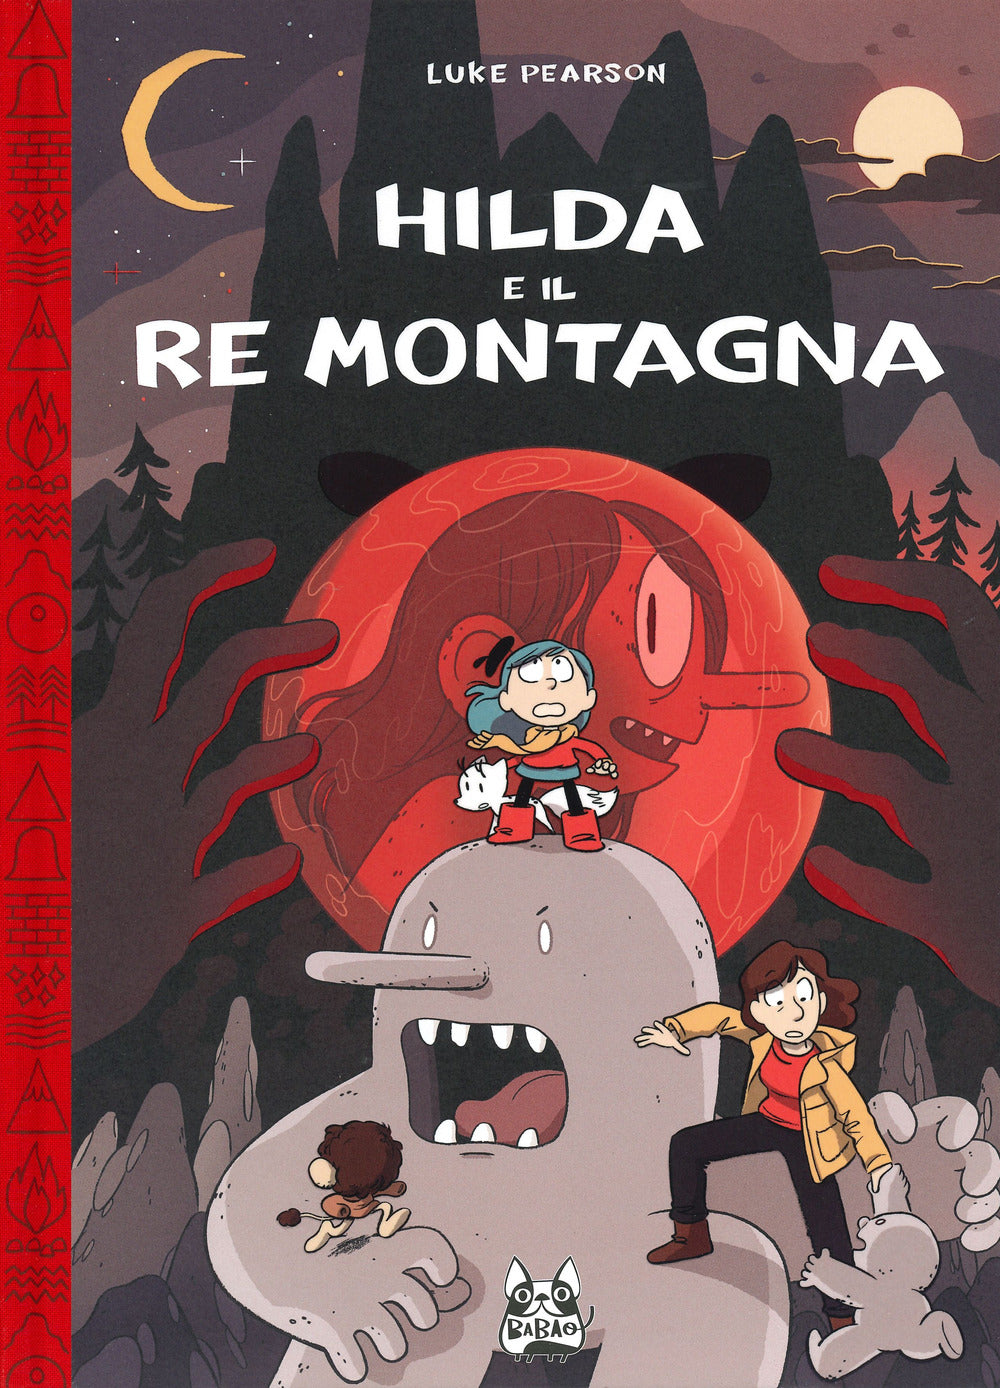 Hilda e il re montagna.